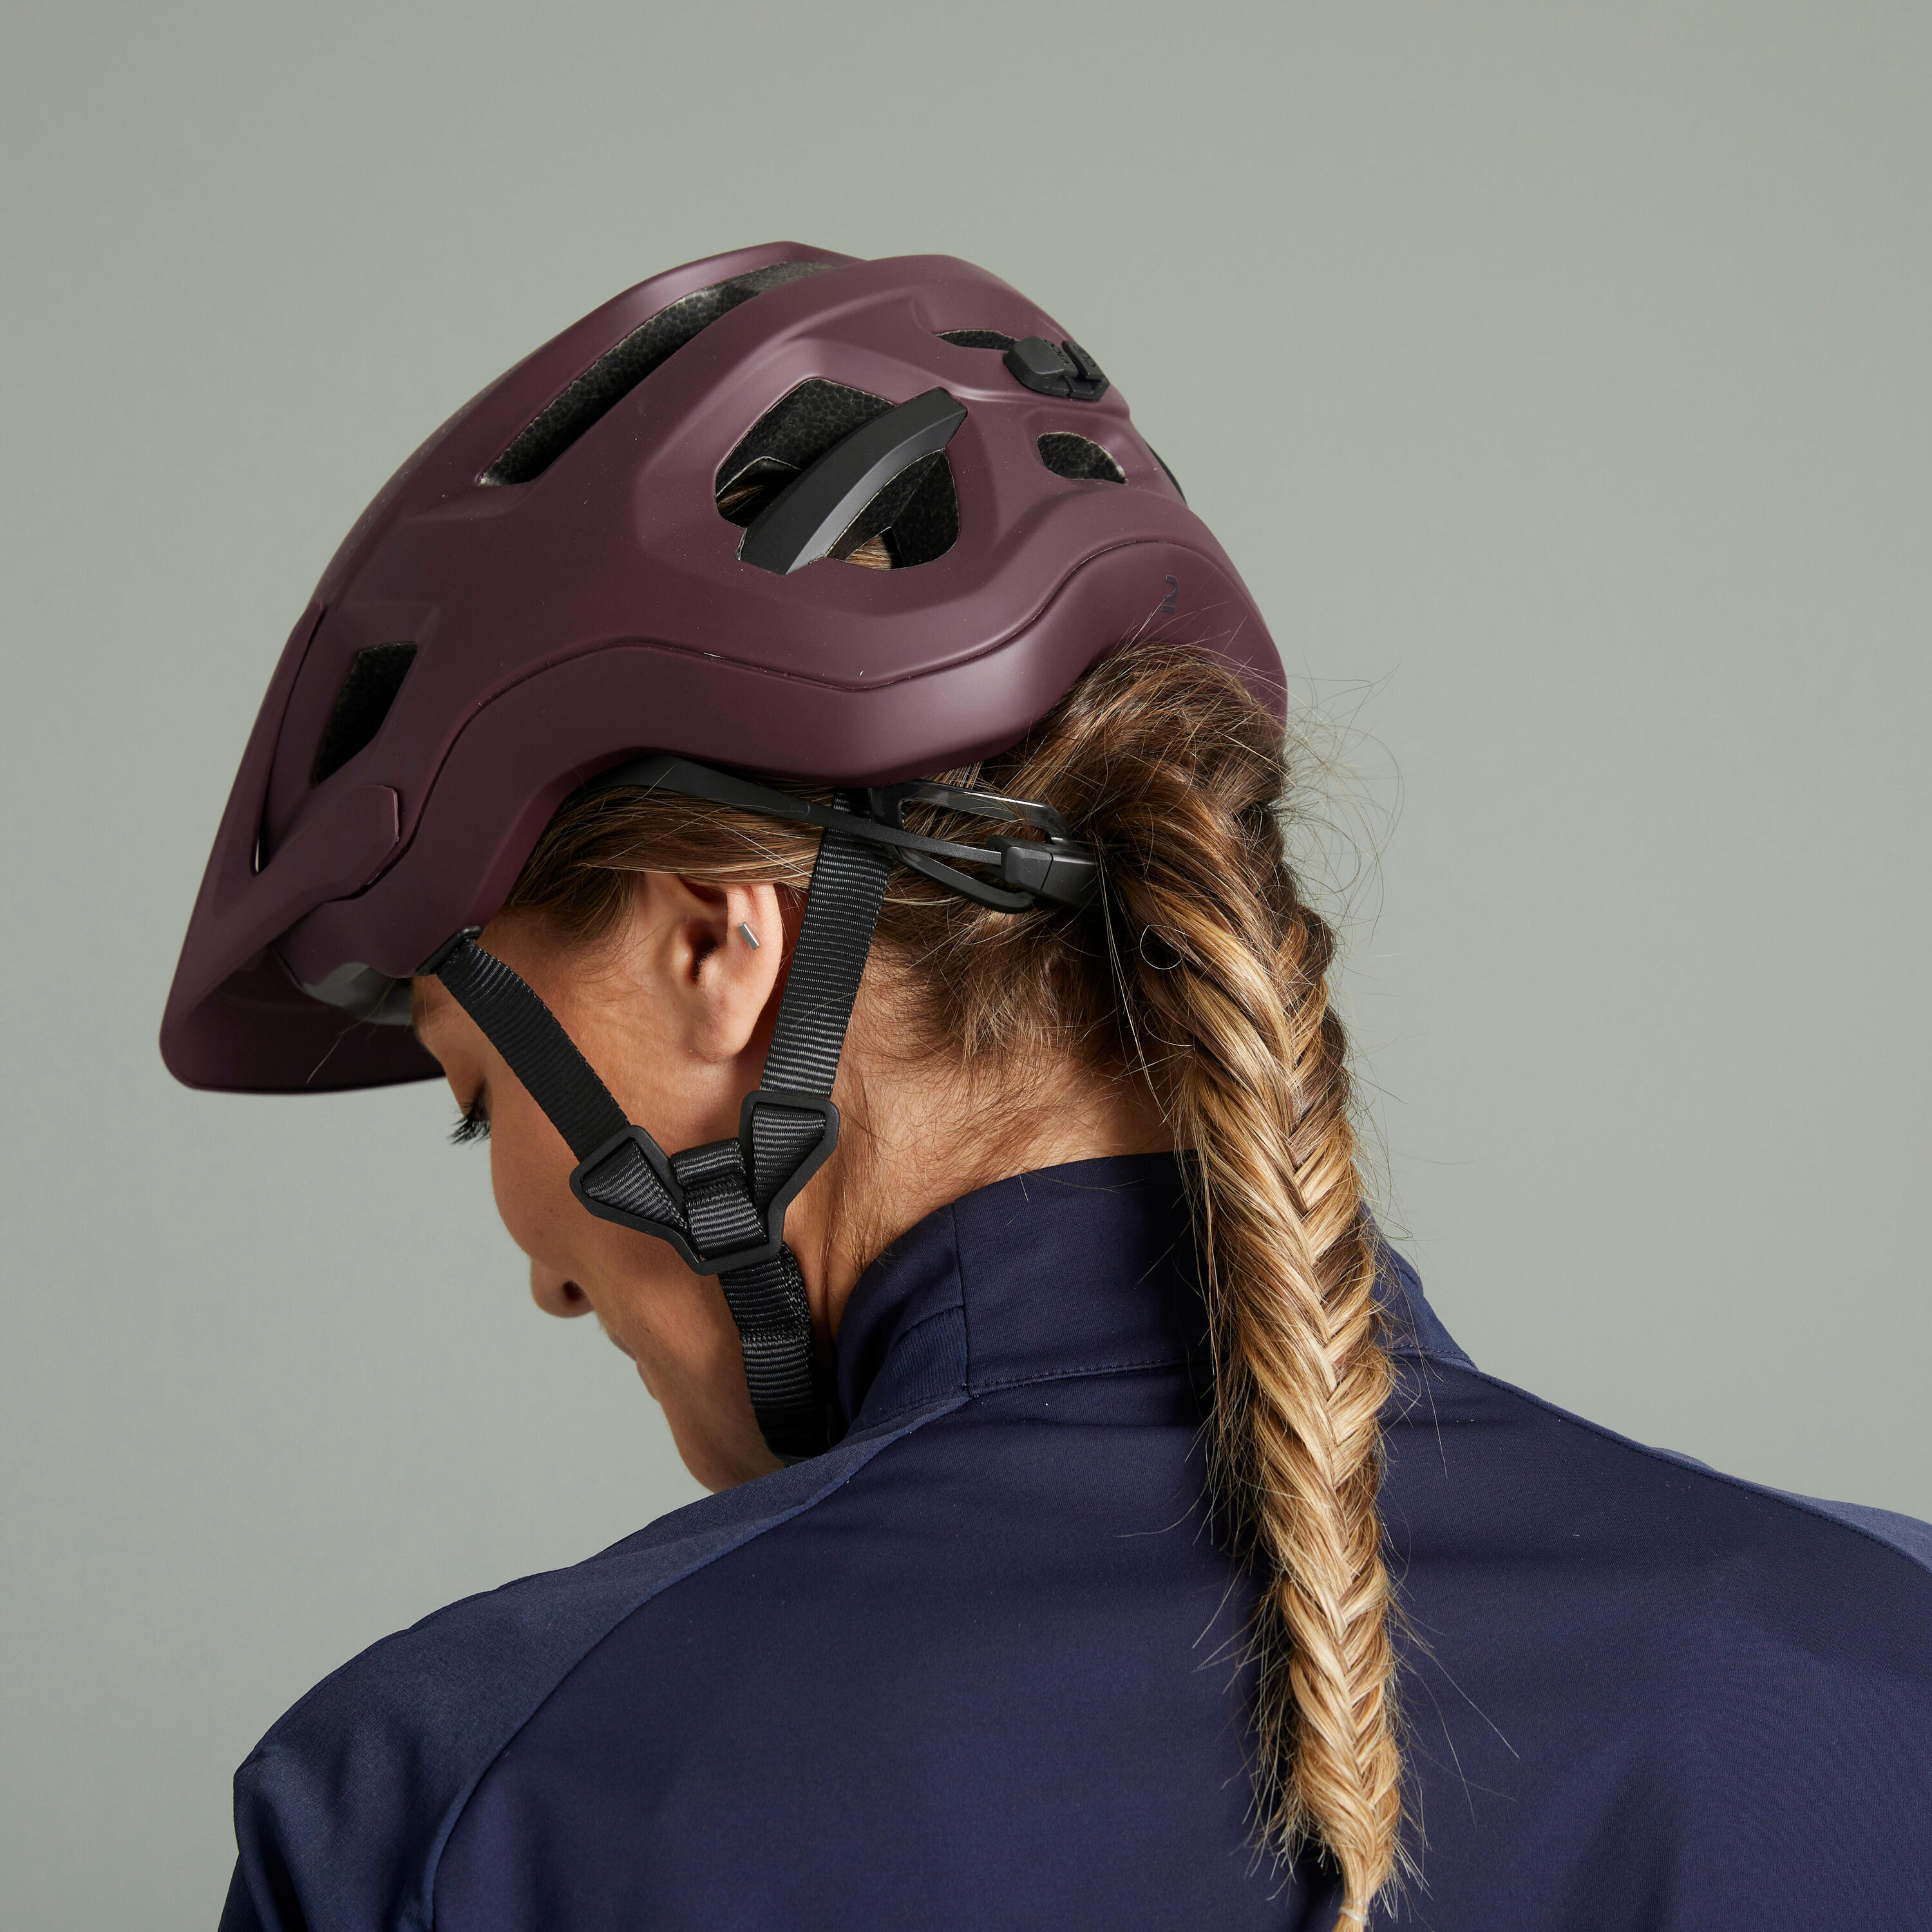 Mountain Bike Helmet EXPL 500 - Burgundy 1/23